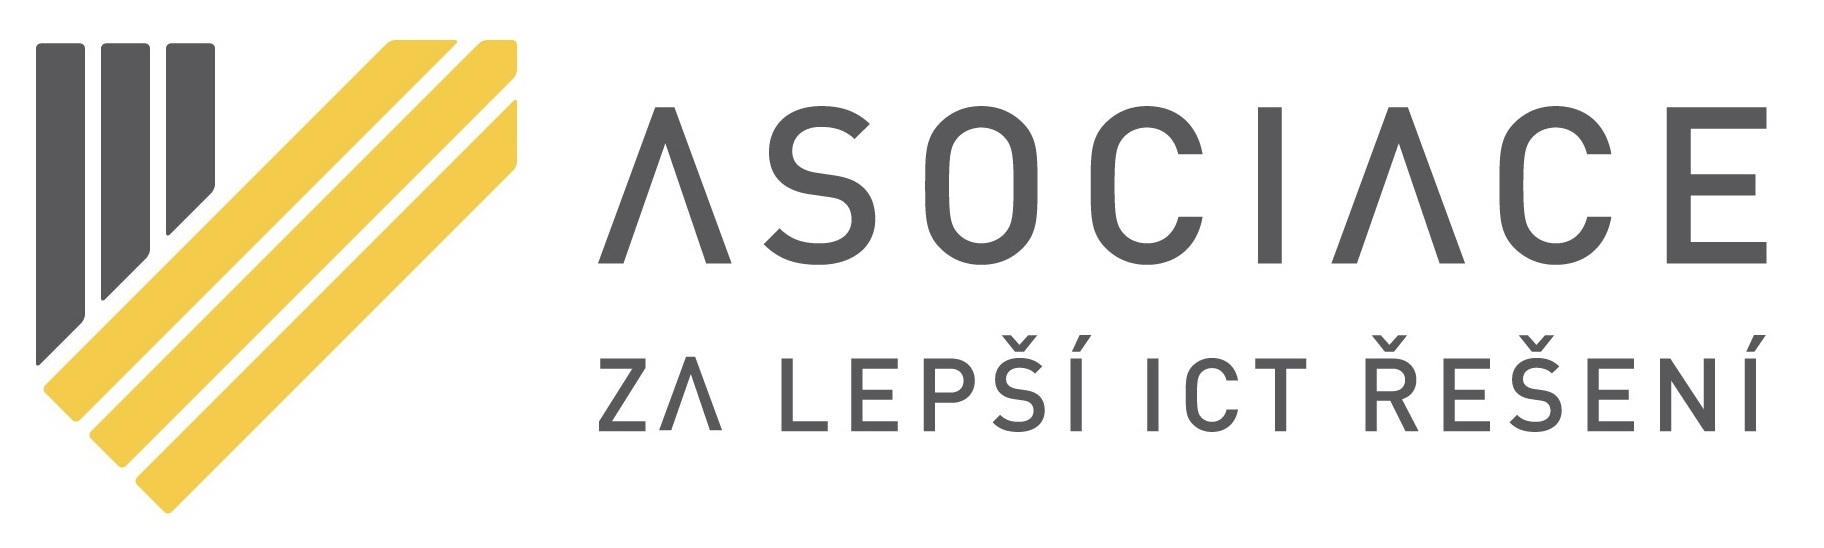 Asociace za lepší ICT řešení - logo